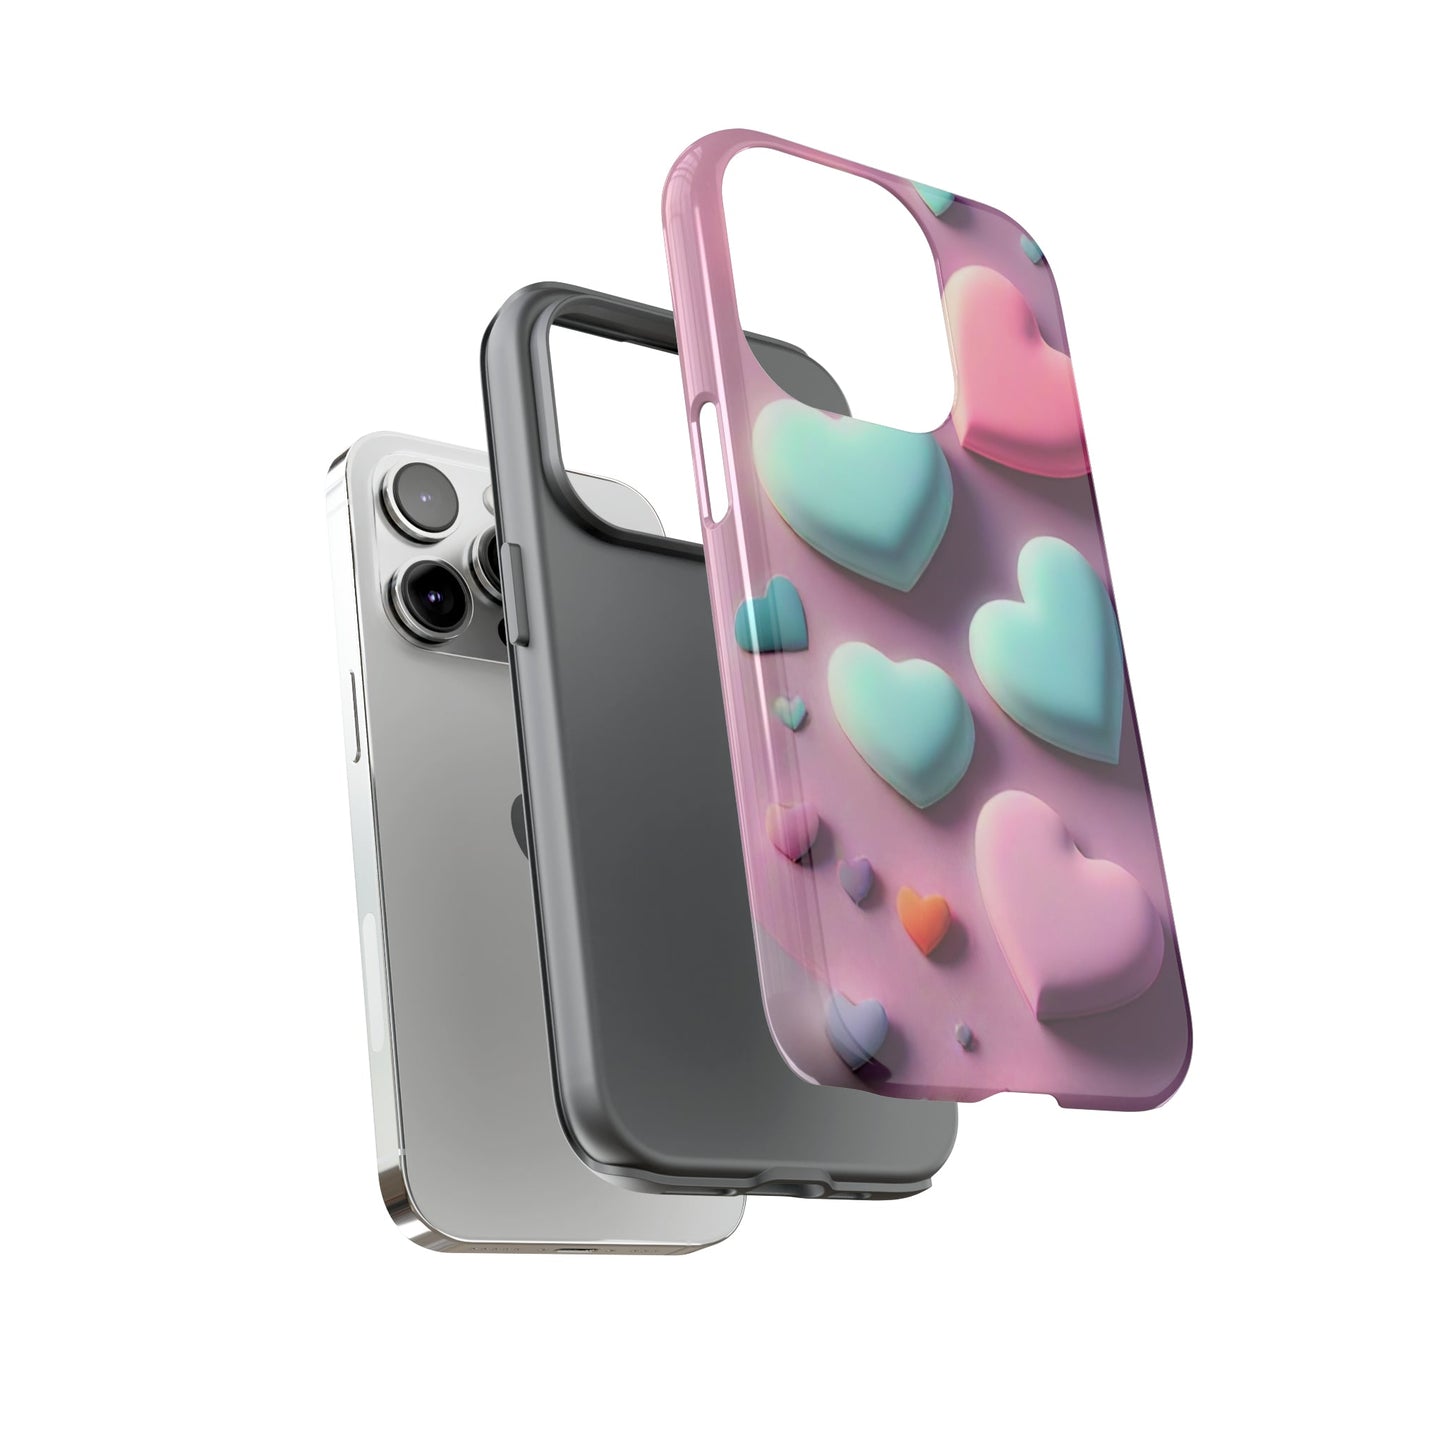 3D Hearts Tough Phone Case